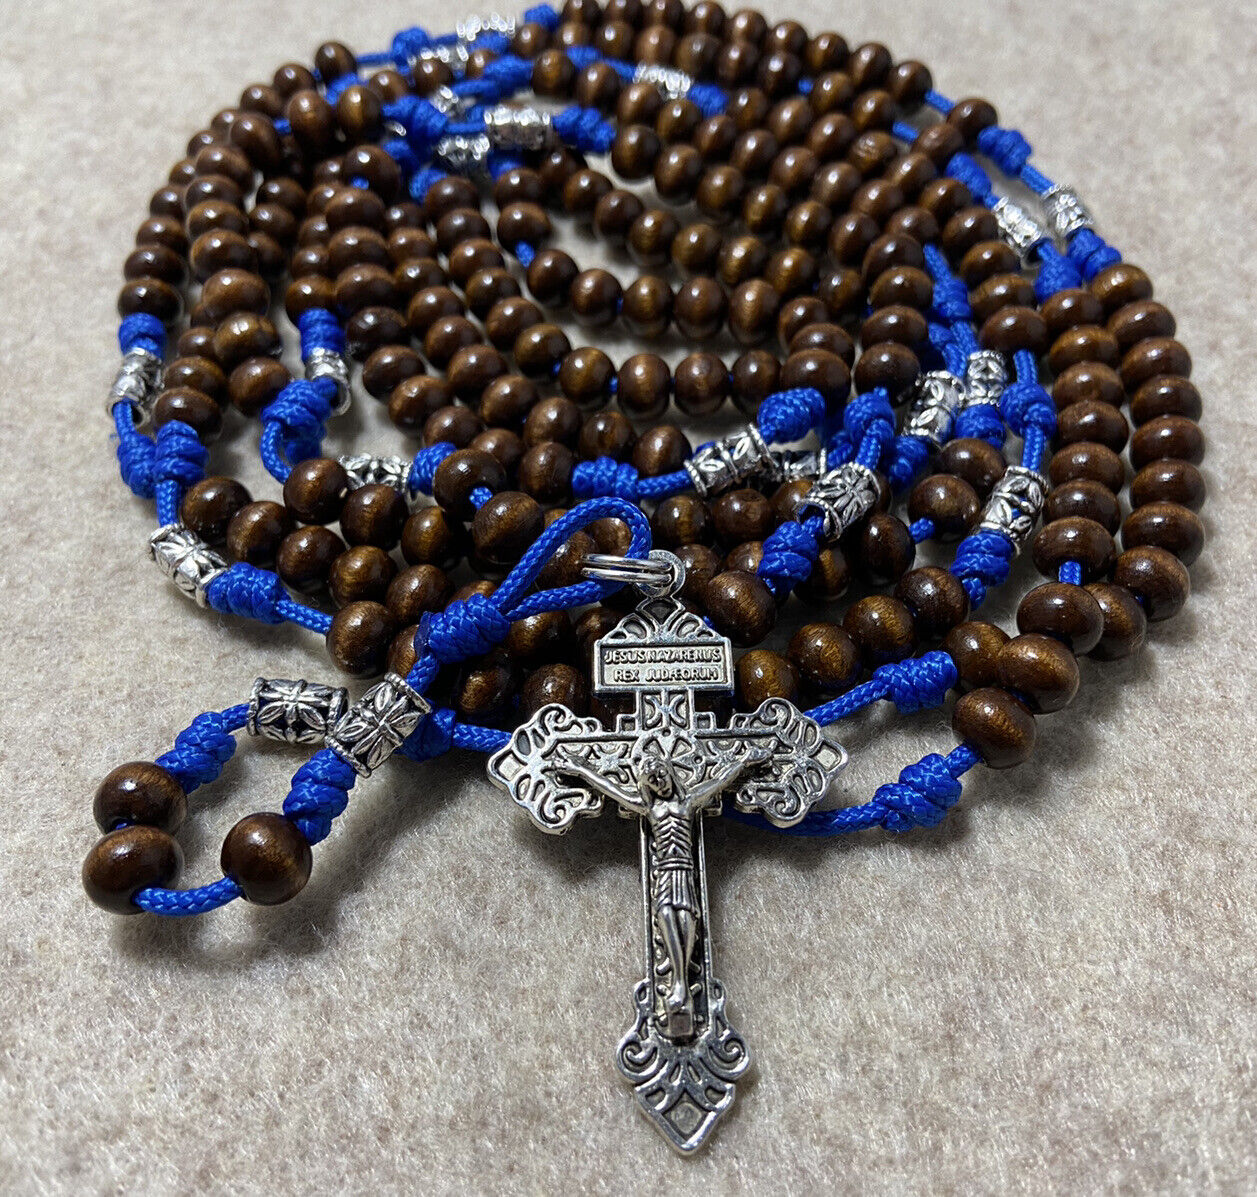 20 Decade Catholic Rosary- Wooden beads Rosary - Pardon Crucifix - Handmade